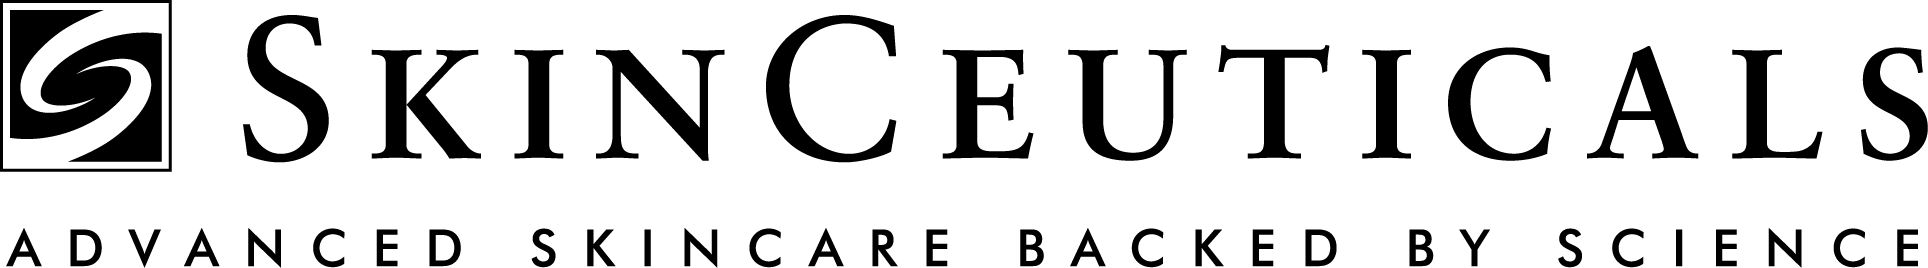 logo-skinceuticals